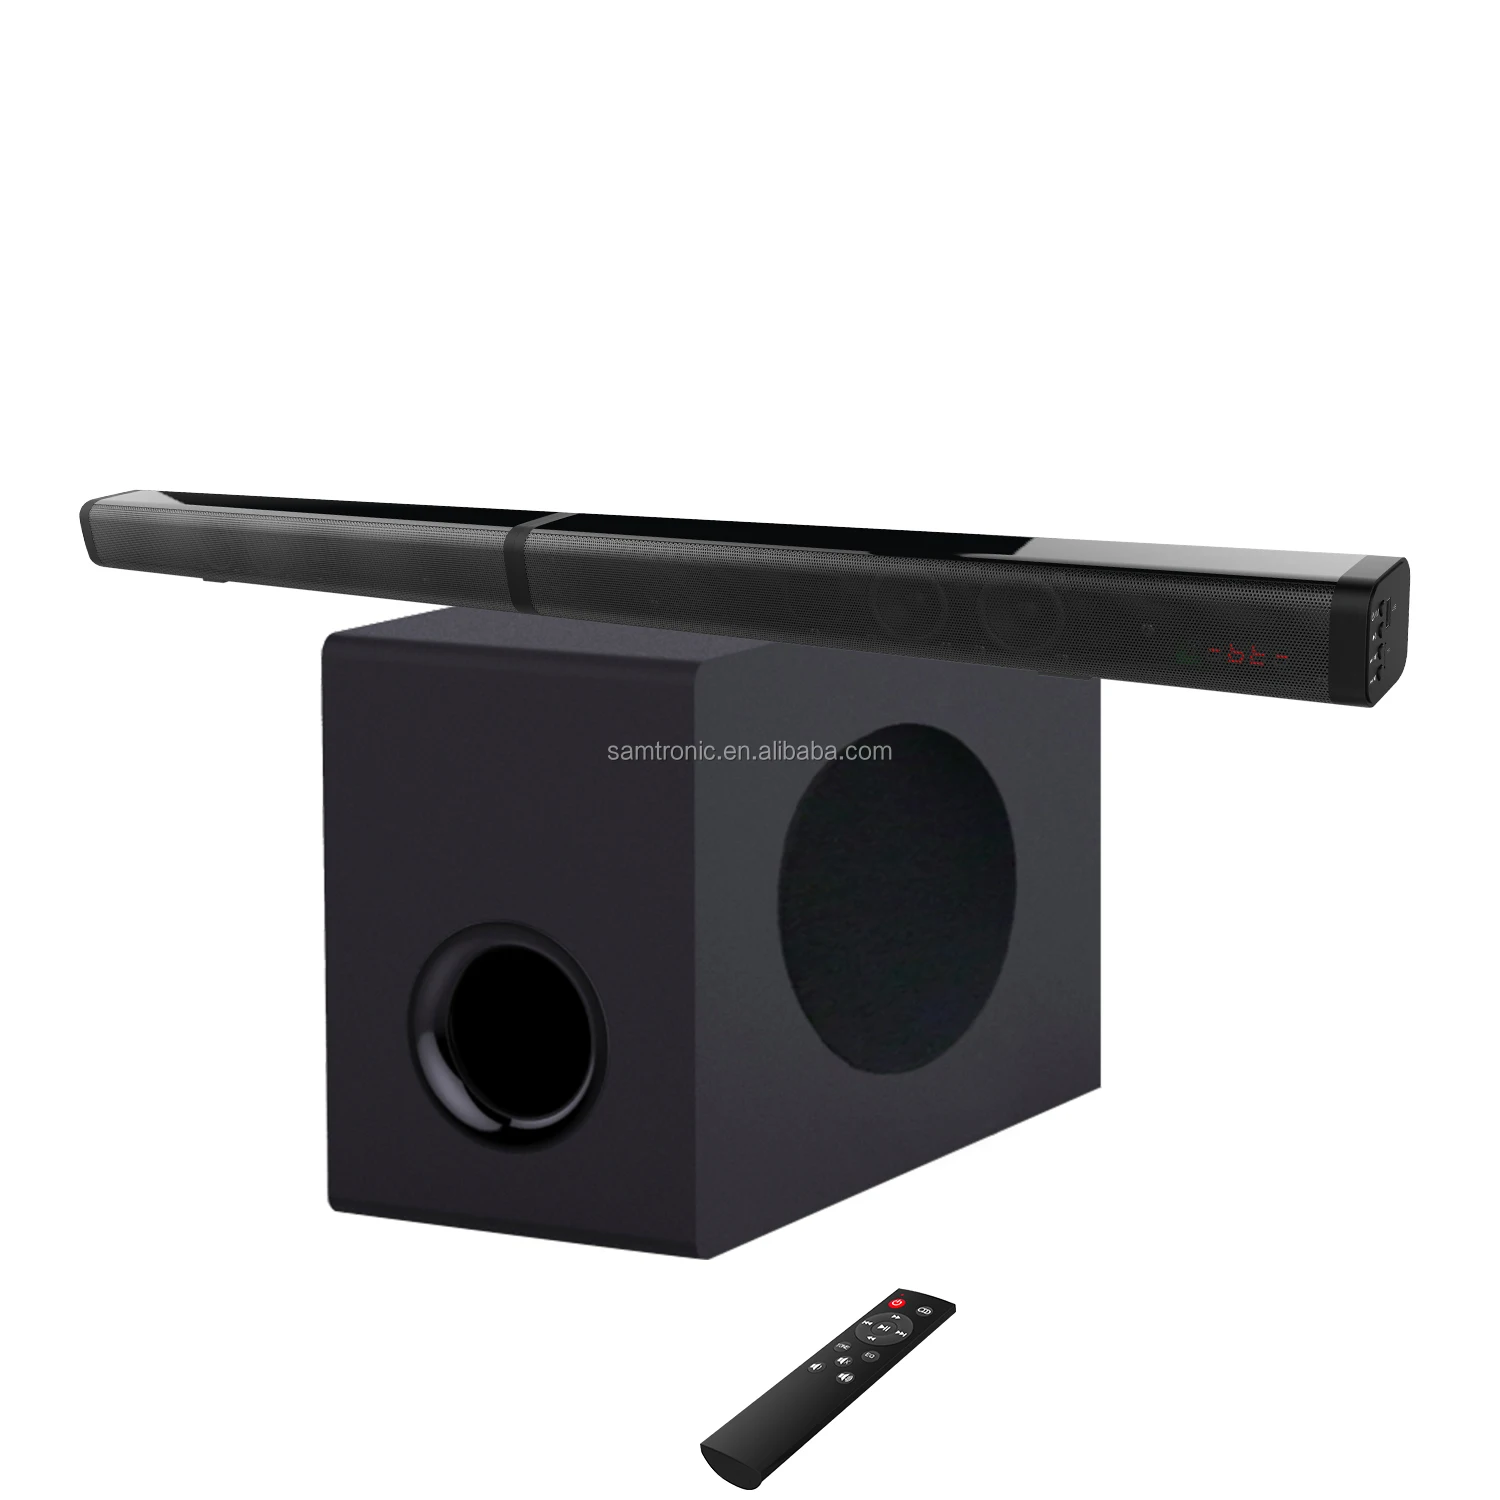 Bara de sunet, Samtronic 37 inch 2.1 ch wireless Detasabila Soundbar cu Subwoofer, Sistem Home Theatre pentru TV SM21263